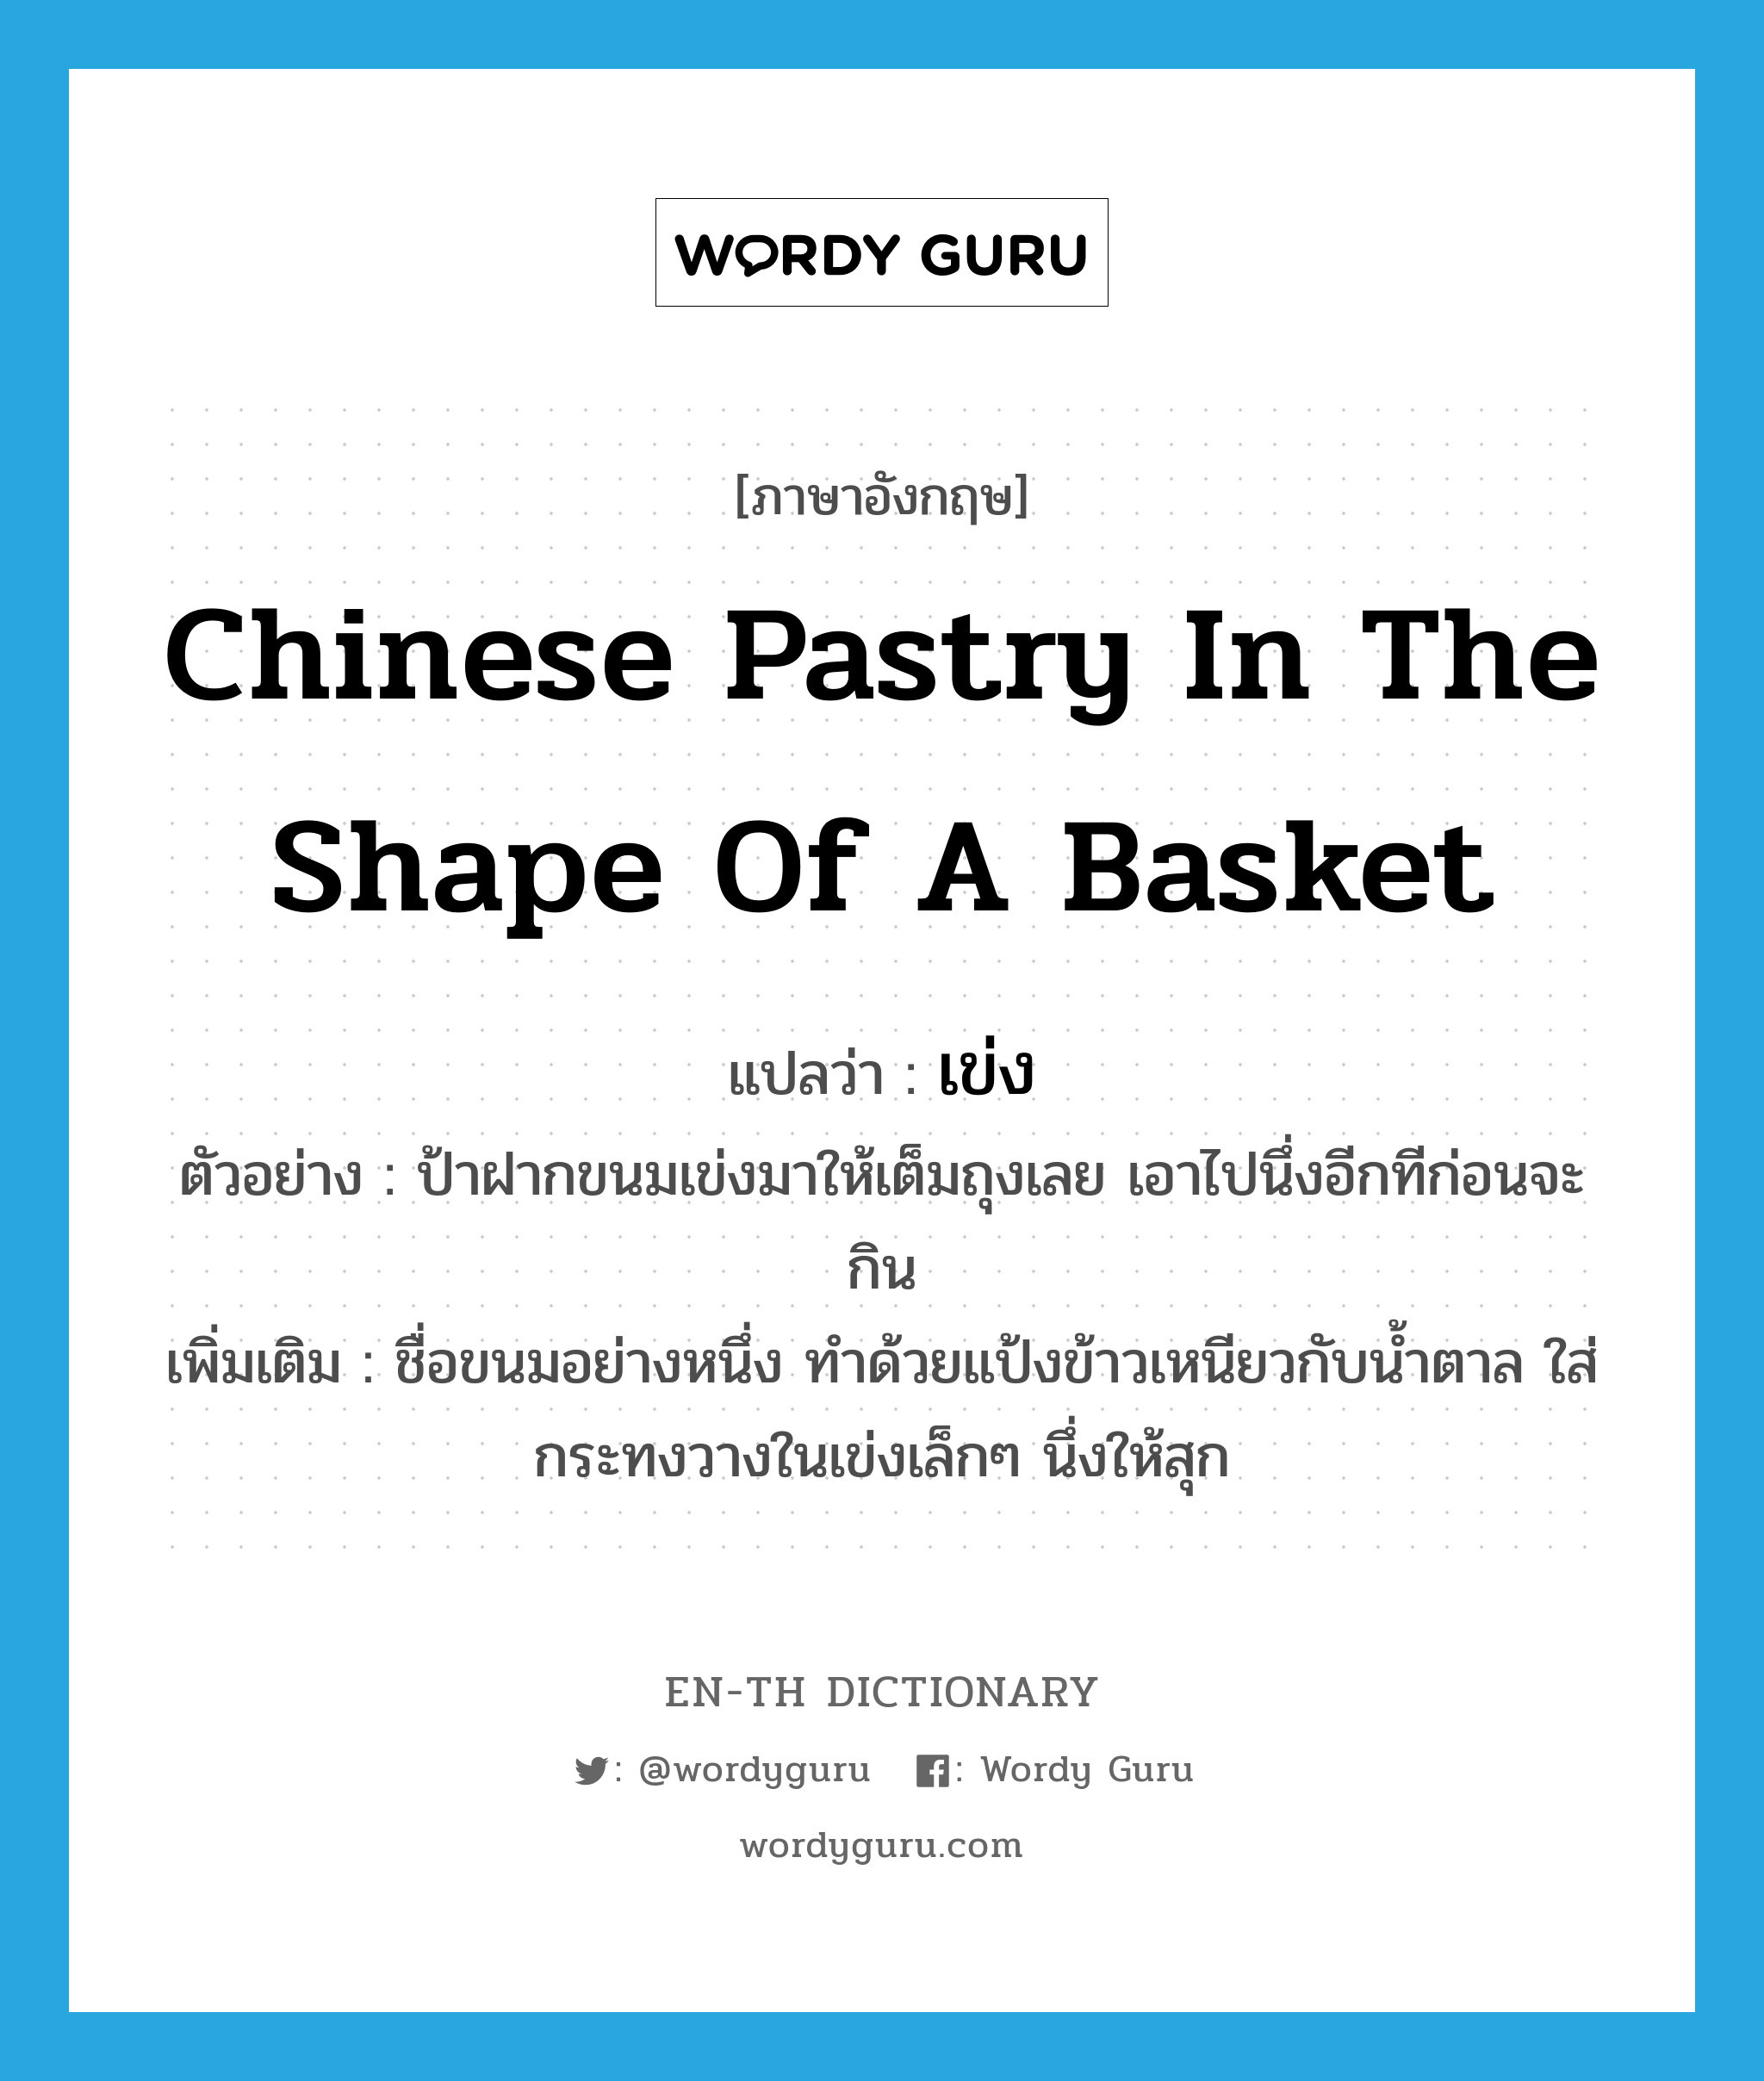 Chinese pastry in the shape of a basket แปลว่า?, คำศัพท์ภาษาอังกฤษ Chinese pastry in the shape of a basket แปลว่า เข่ง ประเภท N ตัวอย่าง ป้าฝากขนมเข่งมาให้เต็มถุงเลย เอาไปนึ่งอีกทีก่อนจะกิน เพิ่มเติม ชื่อขนมอย่างหนึ่ง ทำด้วยแป้งข้าวเหนียวกับน้ำตาล ใส่กระทงวางในเข่งเล็กๆ นึ่งให้สุก หมวด N